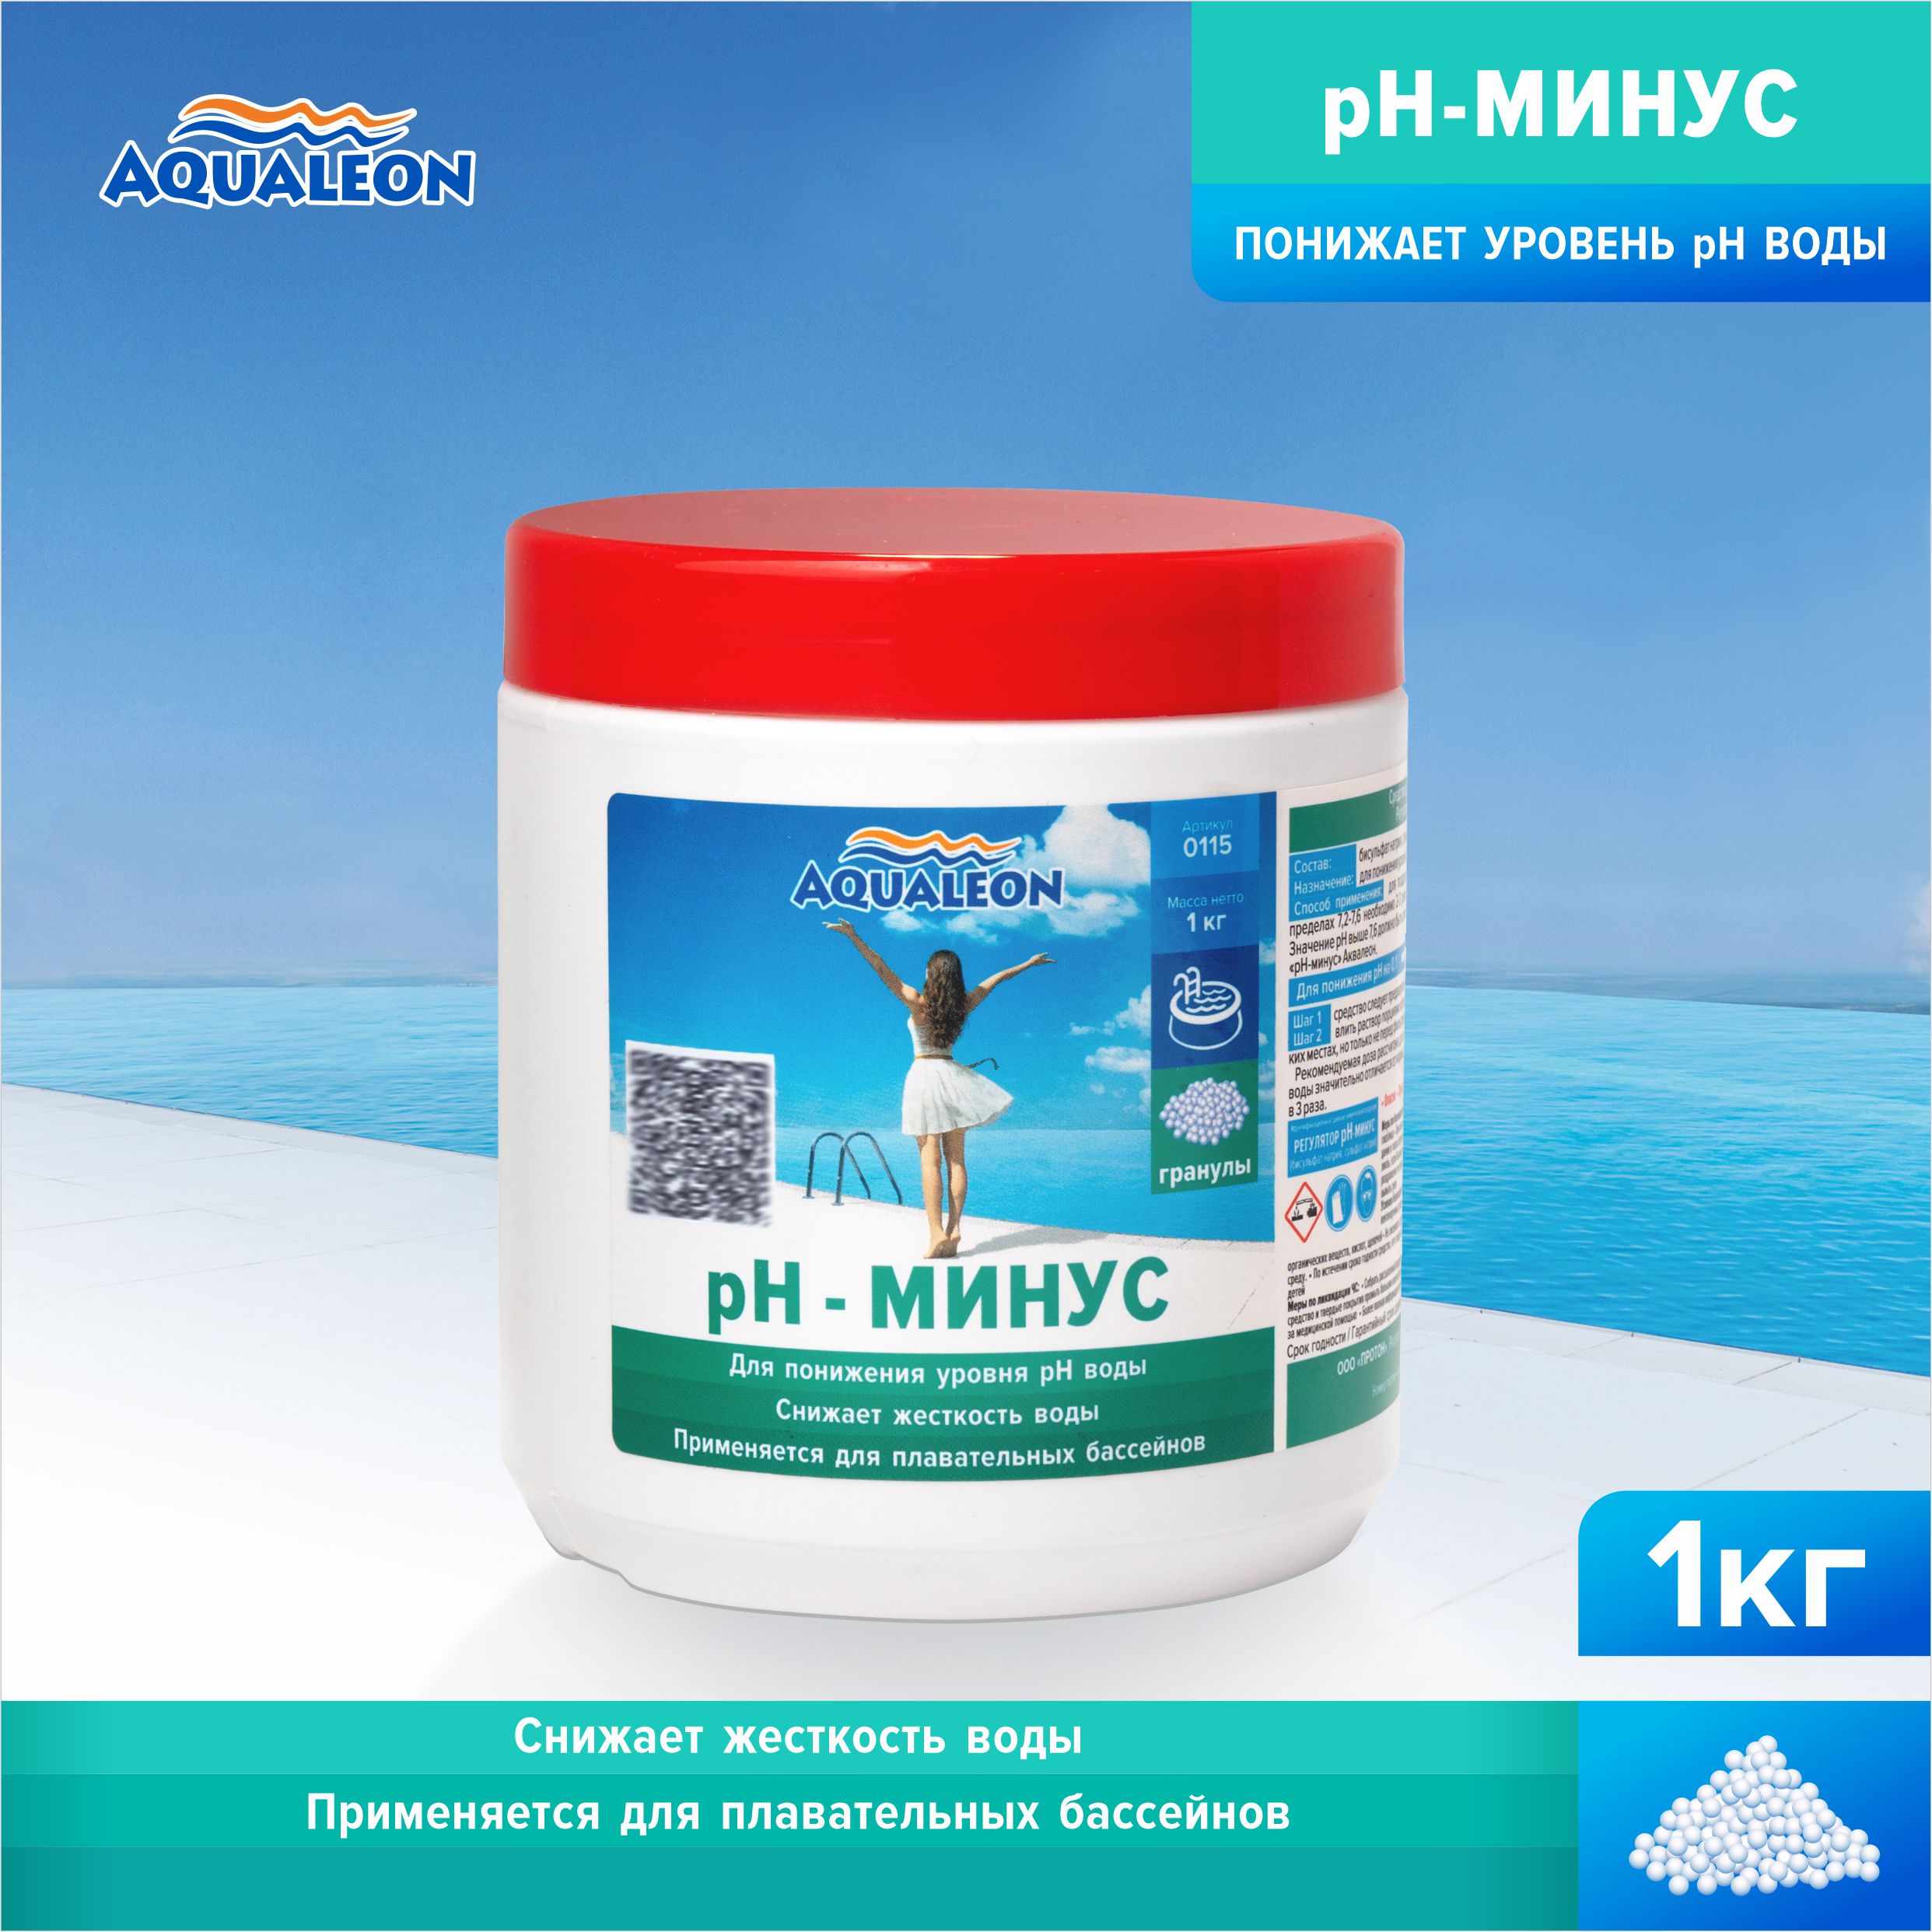 pH-минус Aqualeon 0115 в гранулах 1 кг